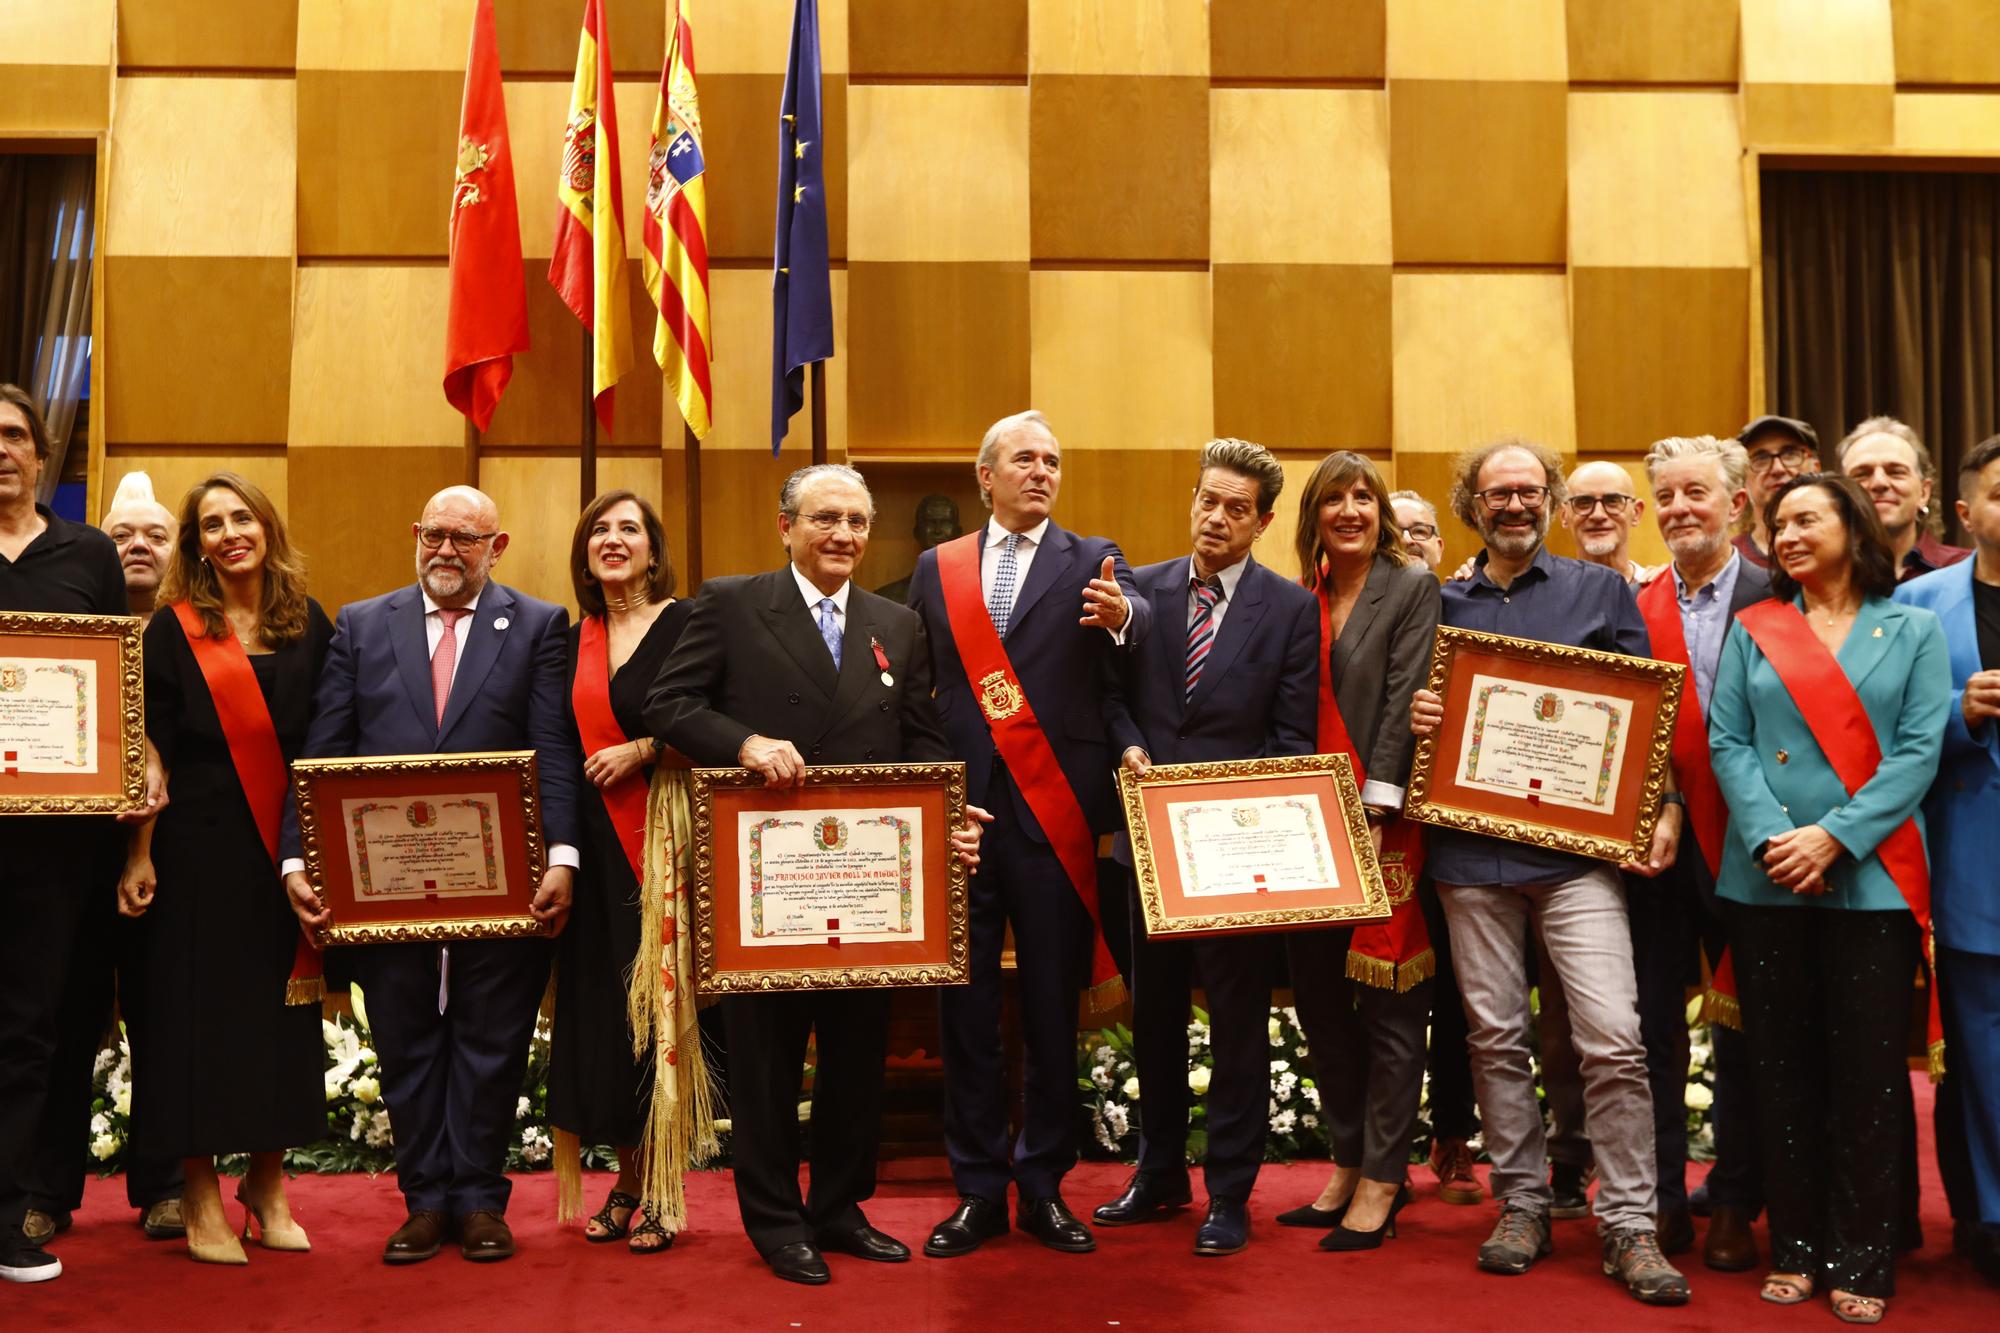 FOTOGALERÍA | Acto de entrega de medallas y distinciones de Zaragoza